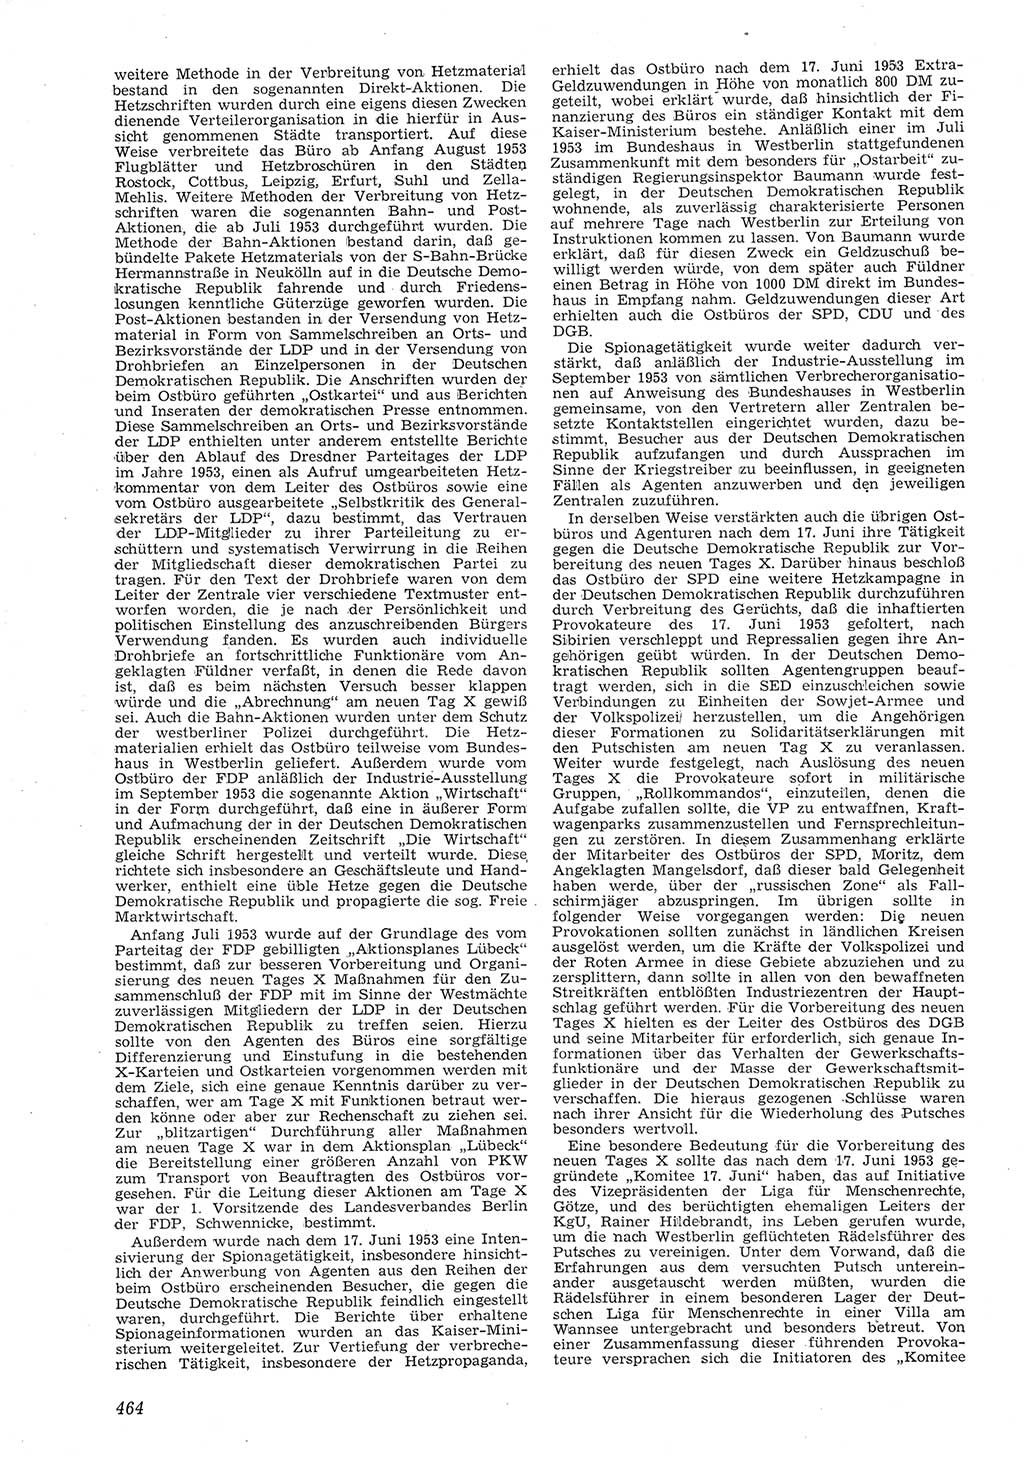 Neue Justiz (NJ), Zeitschrift für Recht und Rechtswissenschaft [Deutsche Demokratische Republik (DDR)], 8. Jahrgang 1954, Seite 464 (NJ DDR 1954, S. 464)